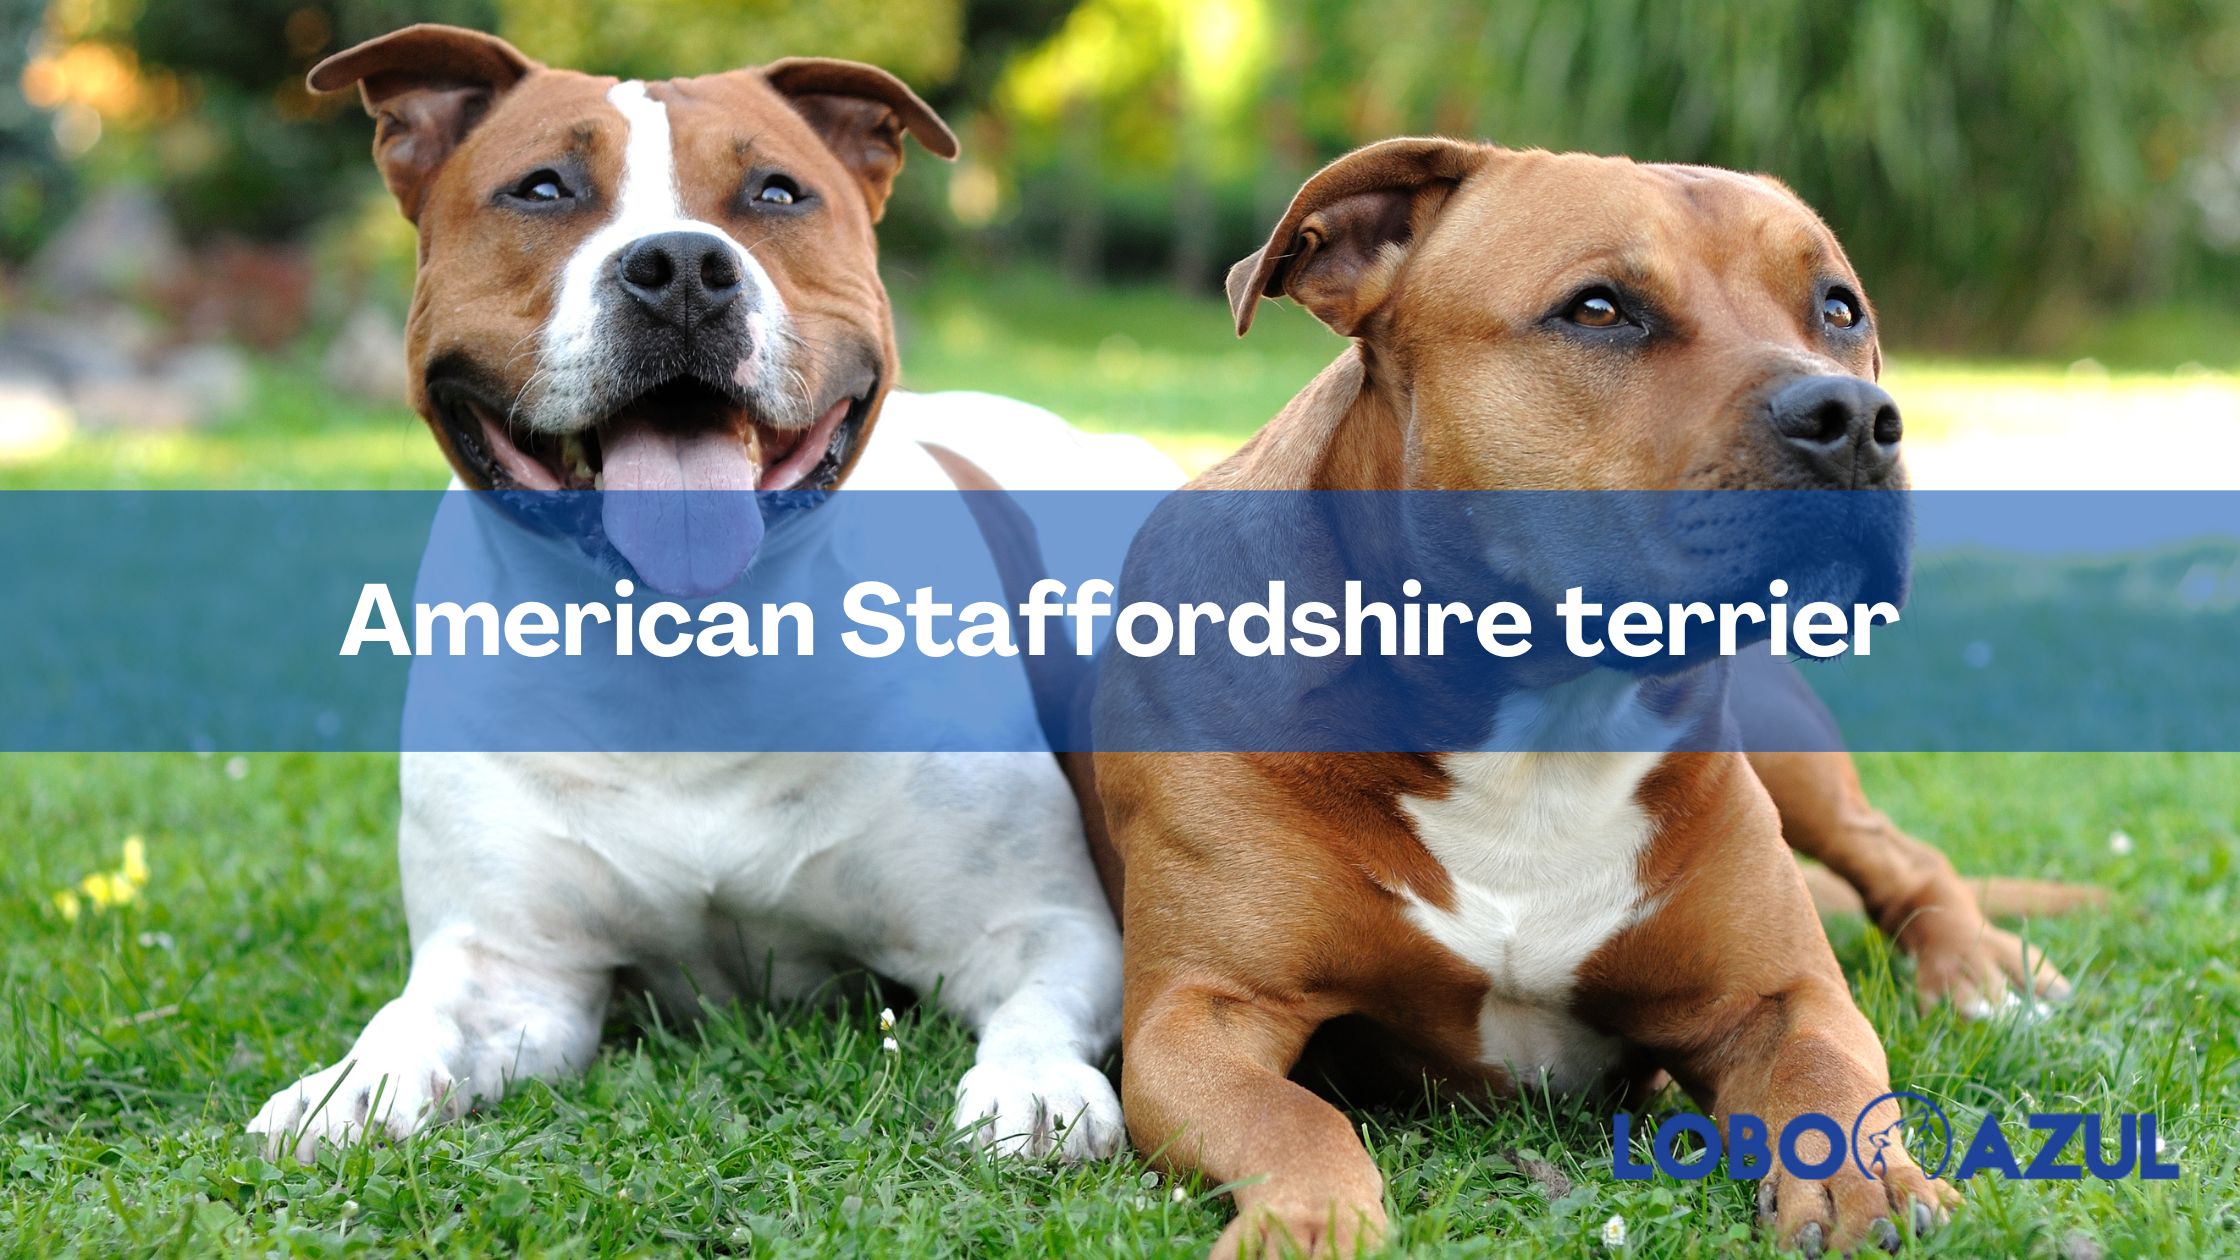 American Staffordshire terrier - Una raza que no deja indiferente a nadie